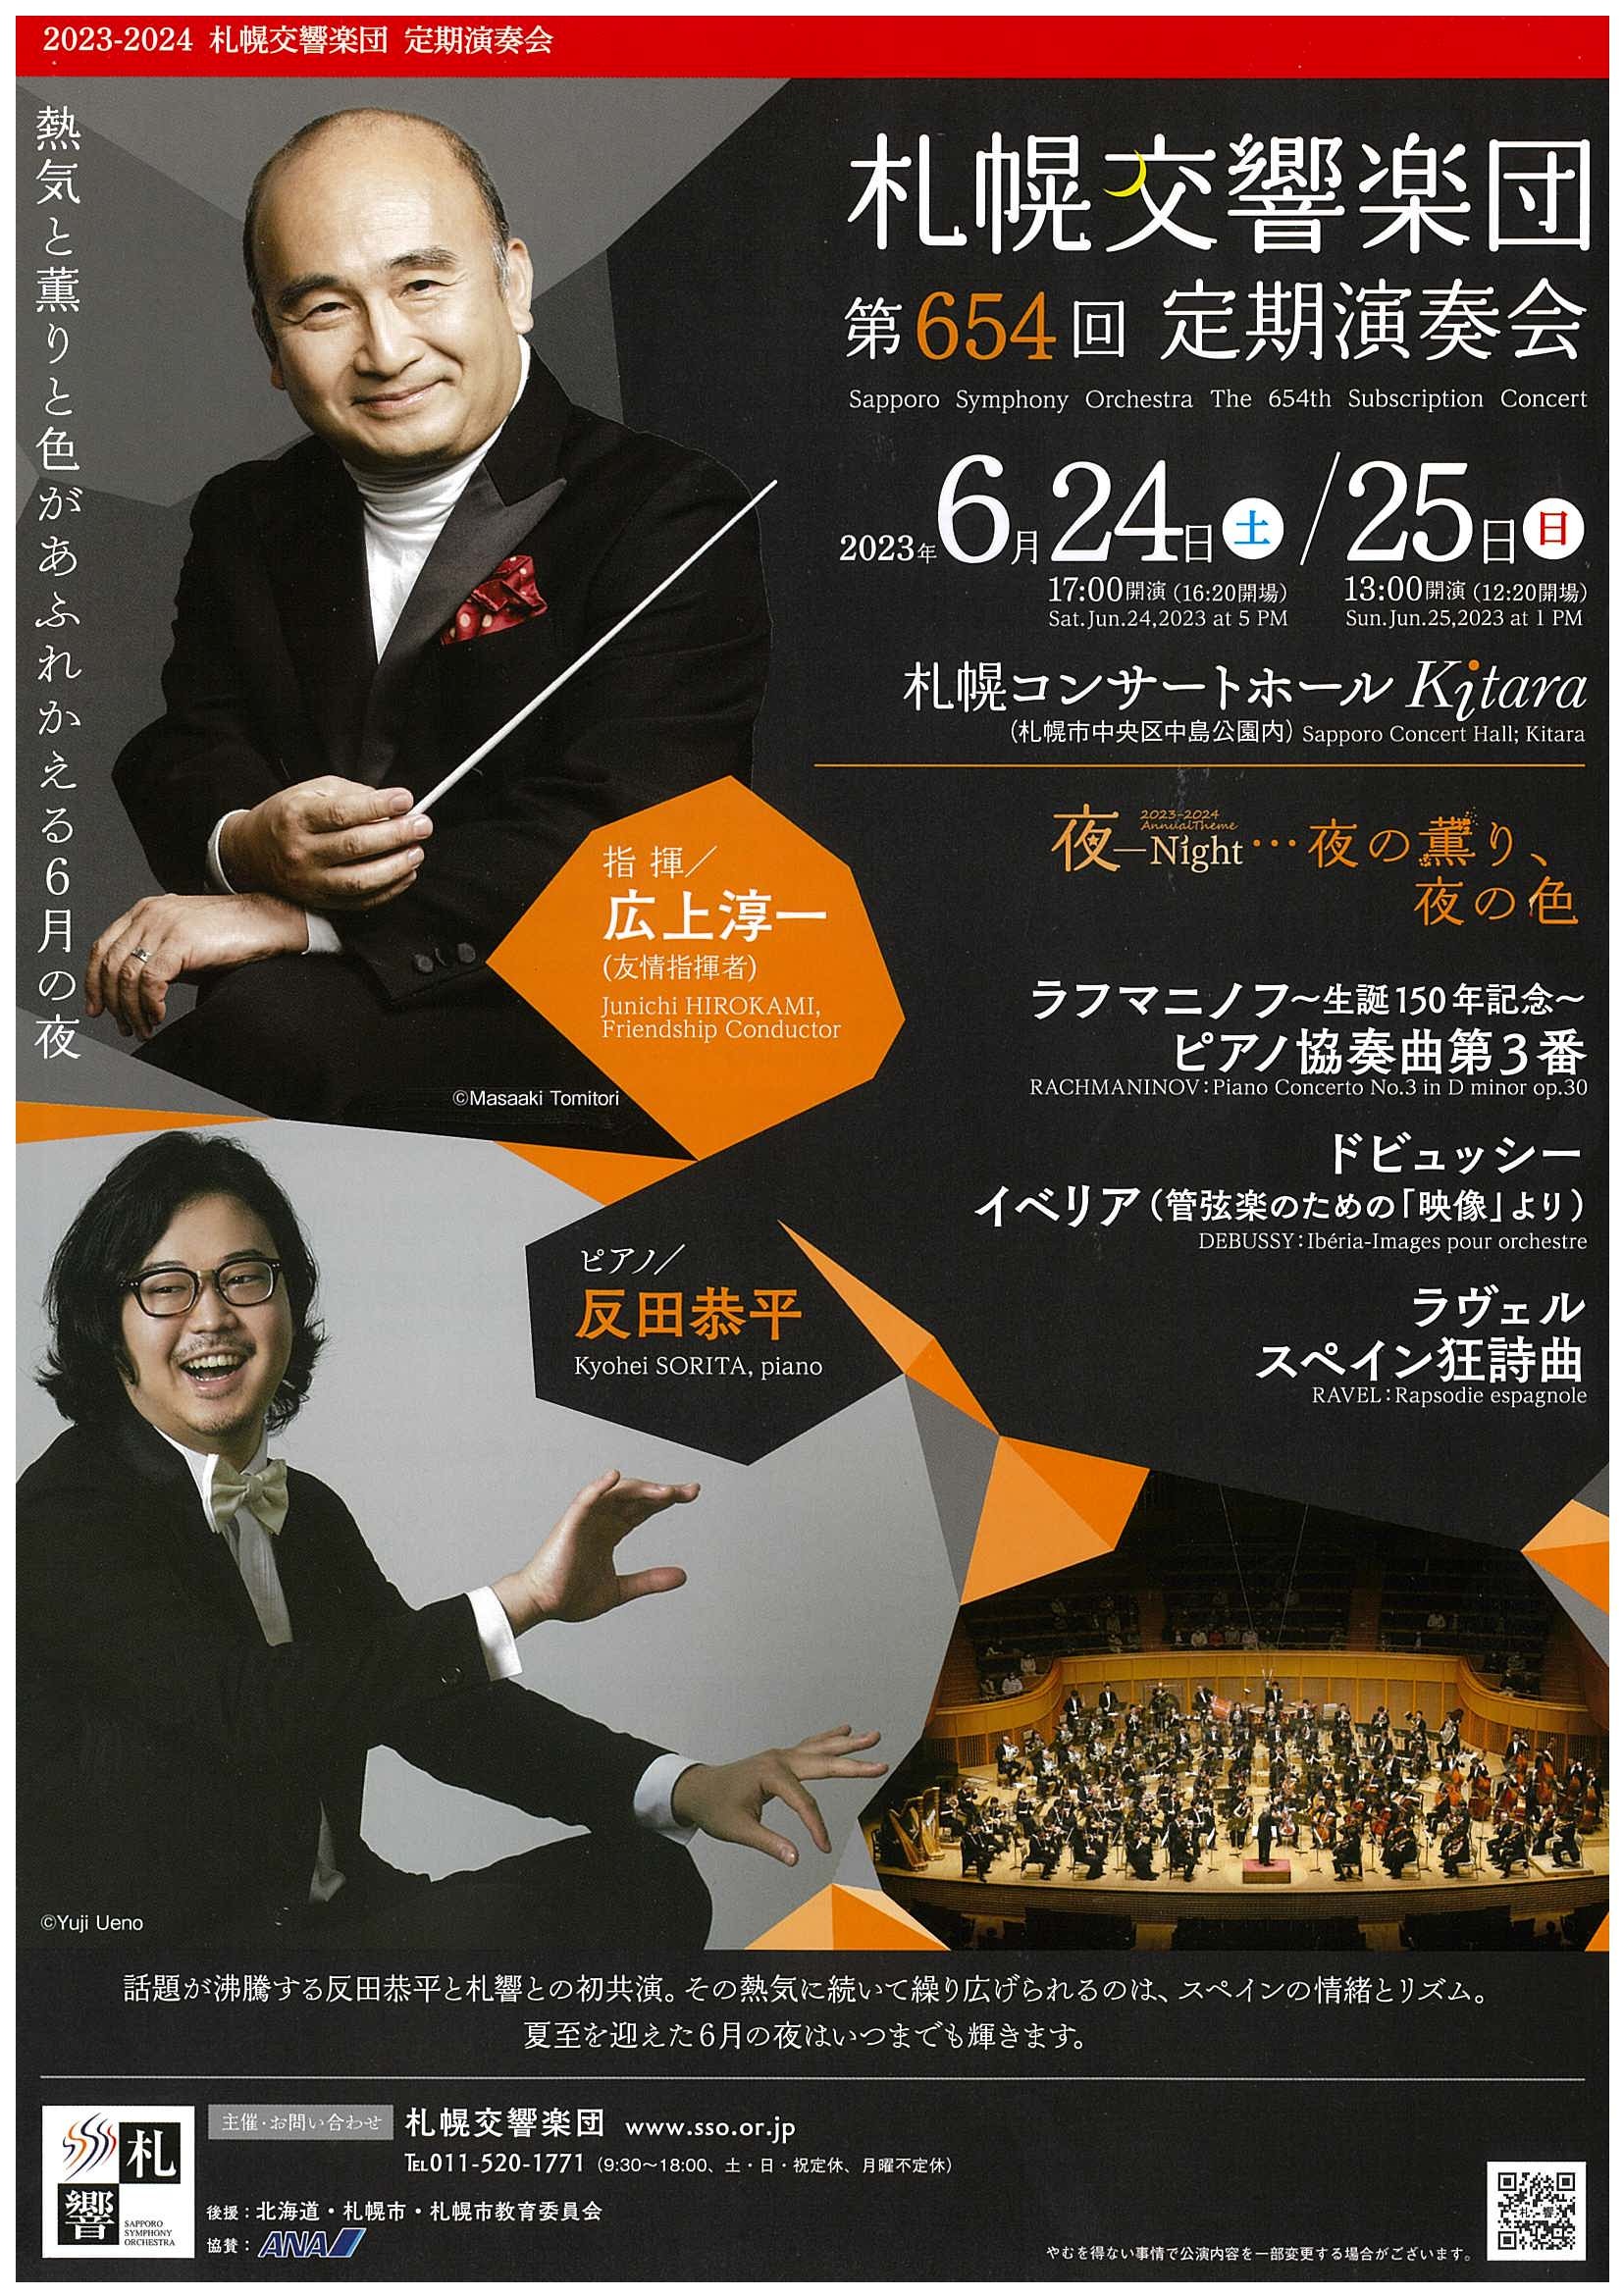 札幌交響楽団 第654回定期演奏会 | 札幌交響楽団 Sapporo Symphony